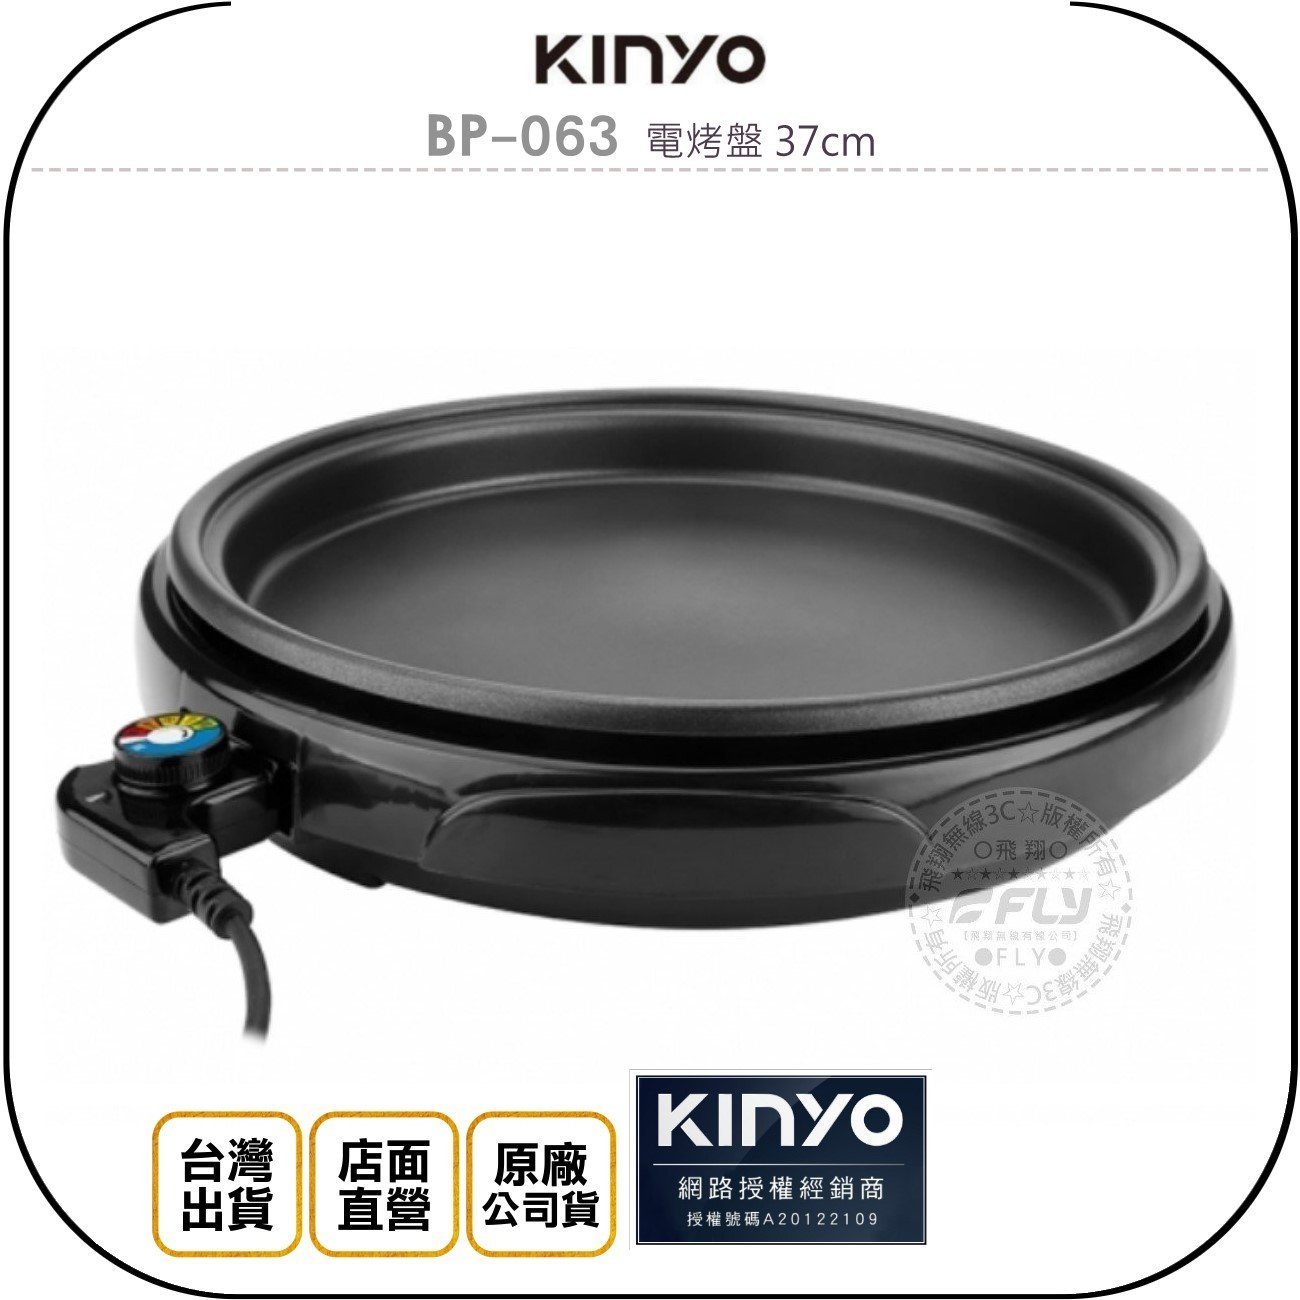 《飛翔無線3C》KINYO 耐嘉 BP-063 電烤盤 37cm◉公司貨◉超薄機型◉玻璃上蓋◉不沾塗層